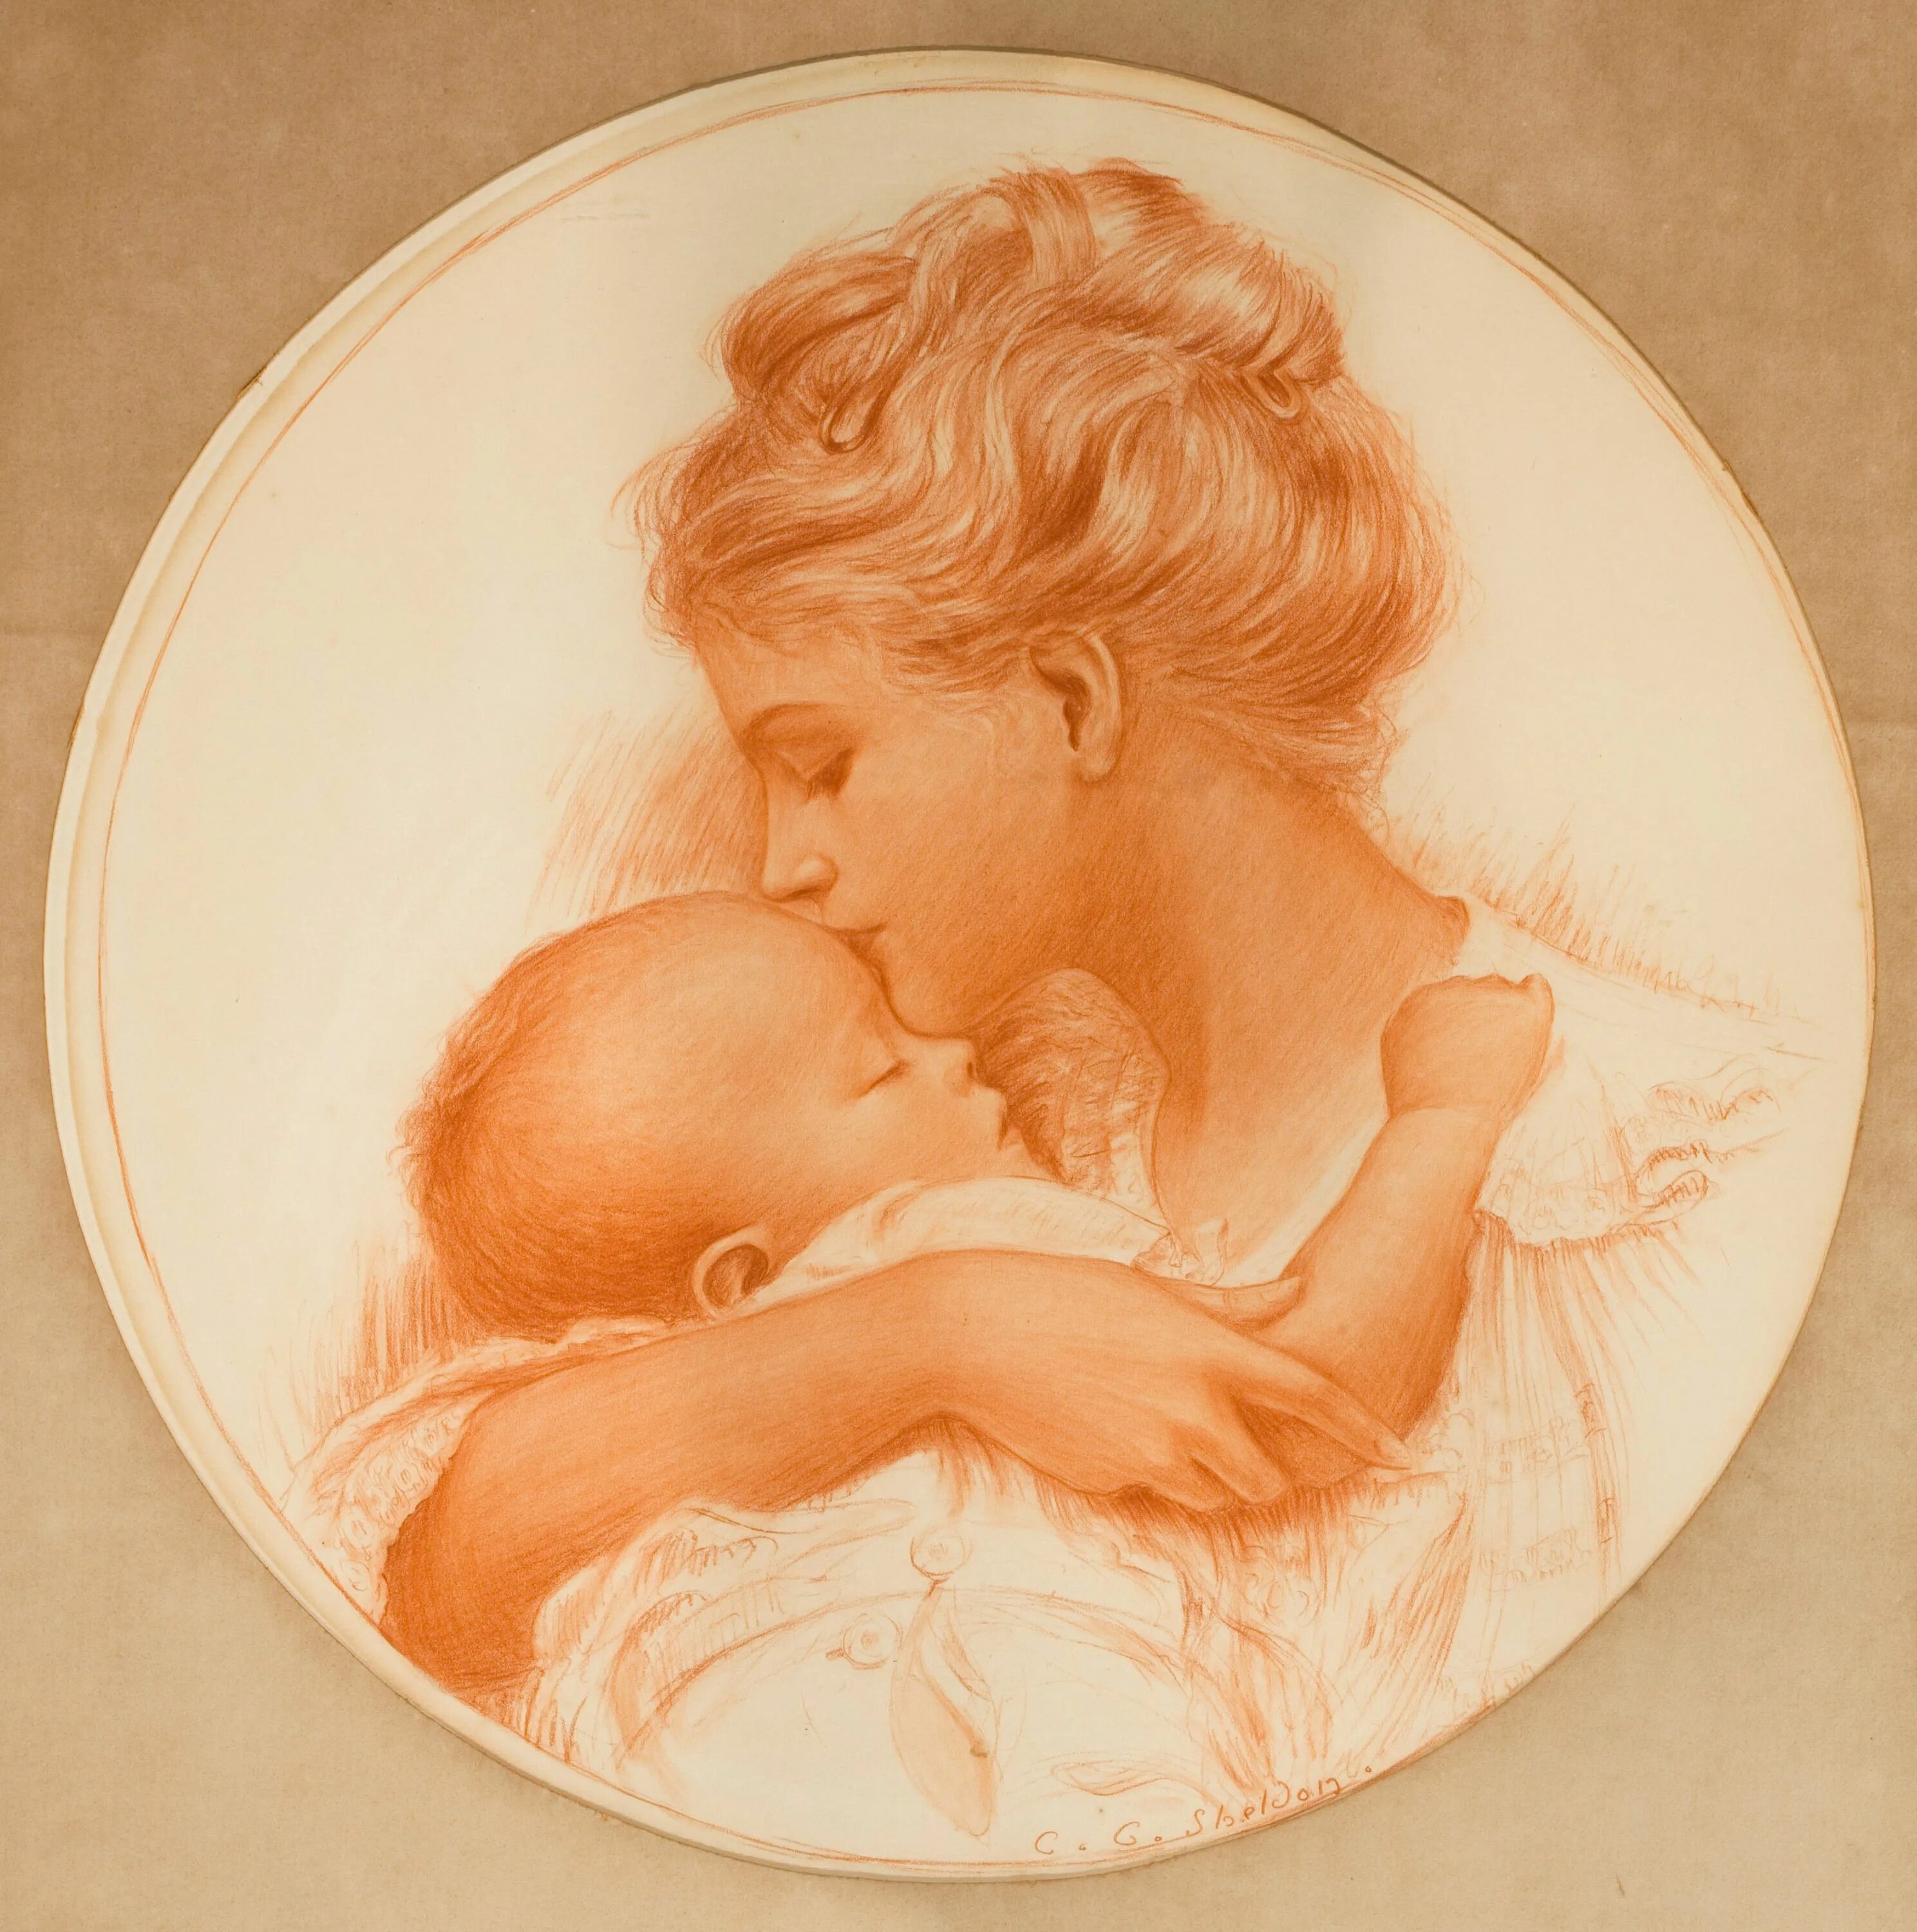 Картин день мамы. "Мать и дитя", Жук, 1906. Мать и дитя. Образ матери и дитя. Картина женщина с ребенком на руках.